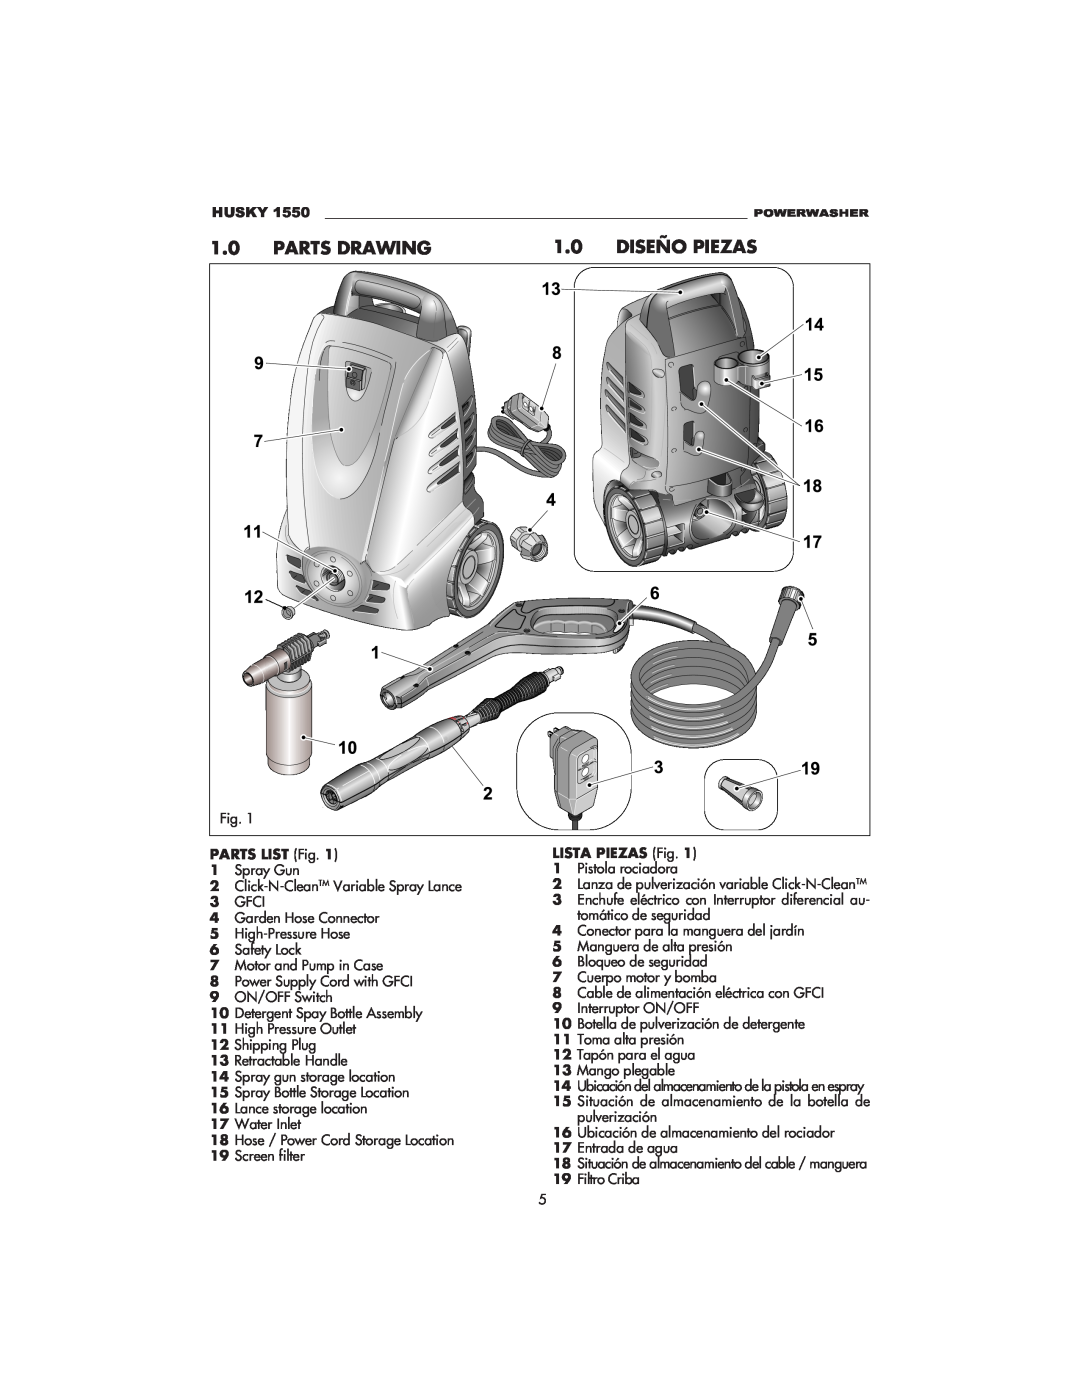 Husky 1550 PSL warranty Parts Drawing, Diseño Piezas, Husky, PARTS LIST Fig, LISTA PIEZAS Fig 